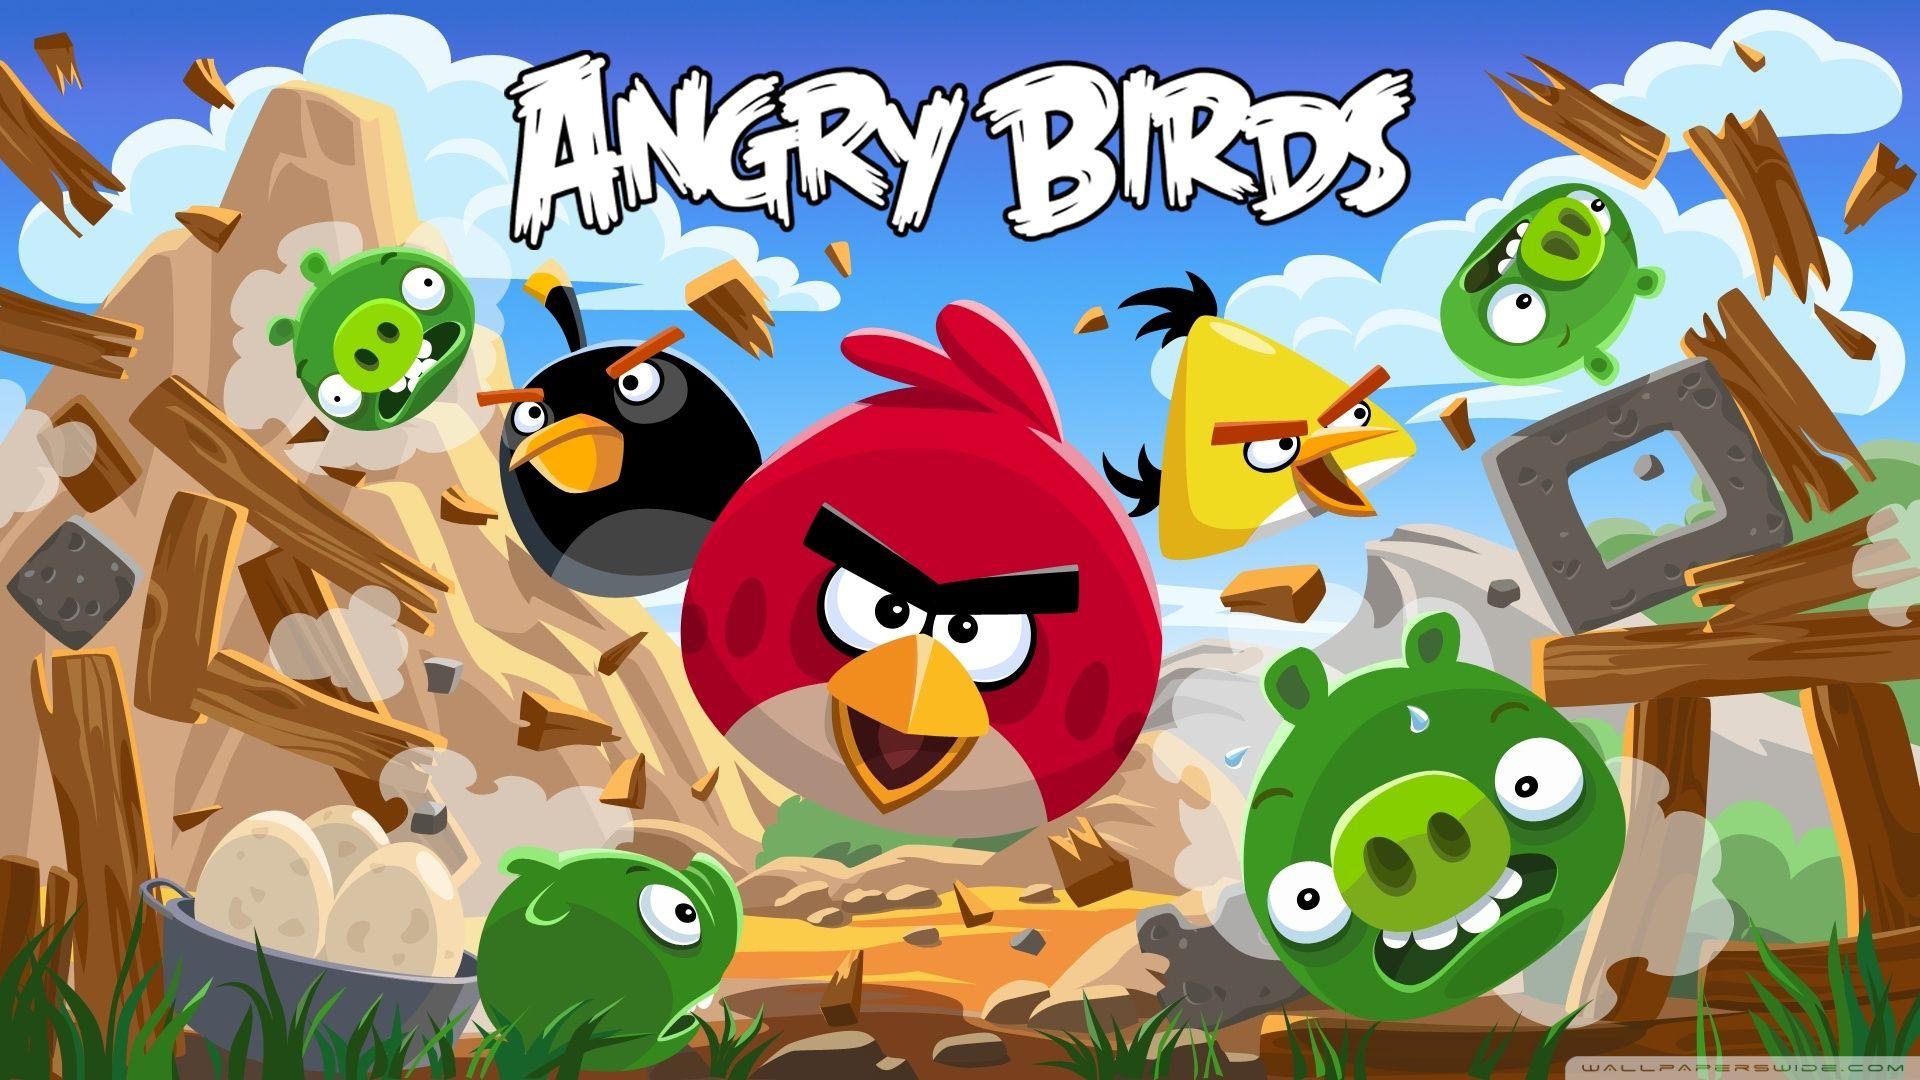 Angry Birds New Version HD desktop wallpaper, Widescreen, High